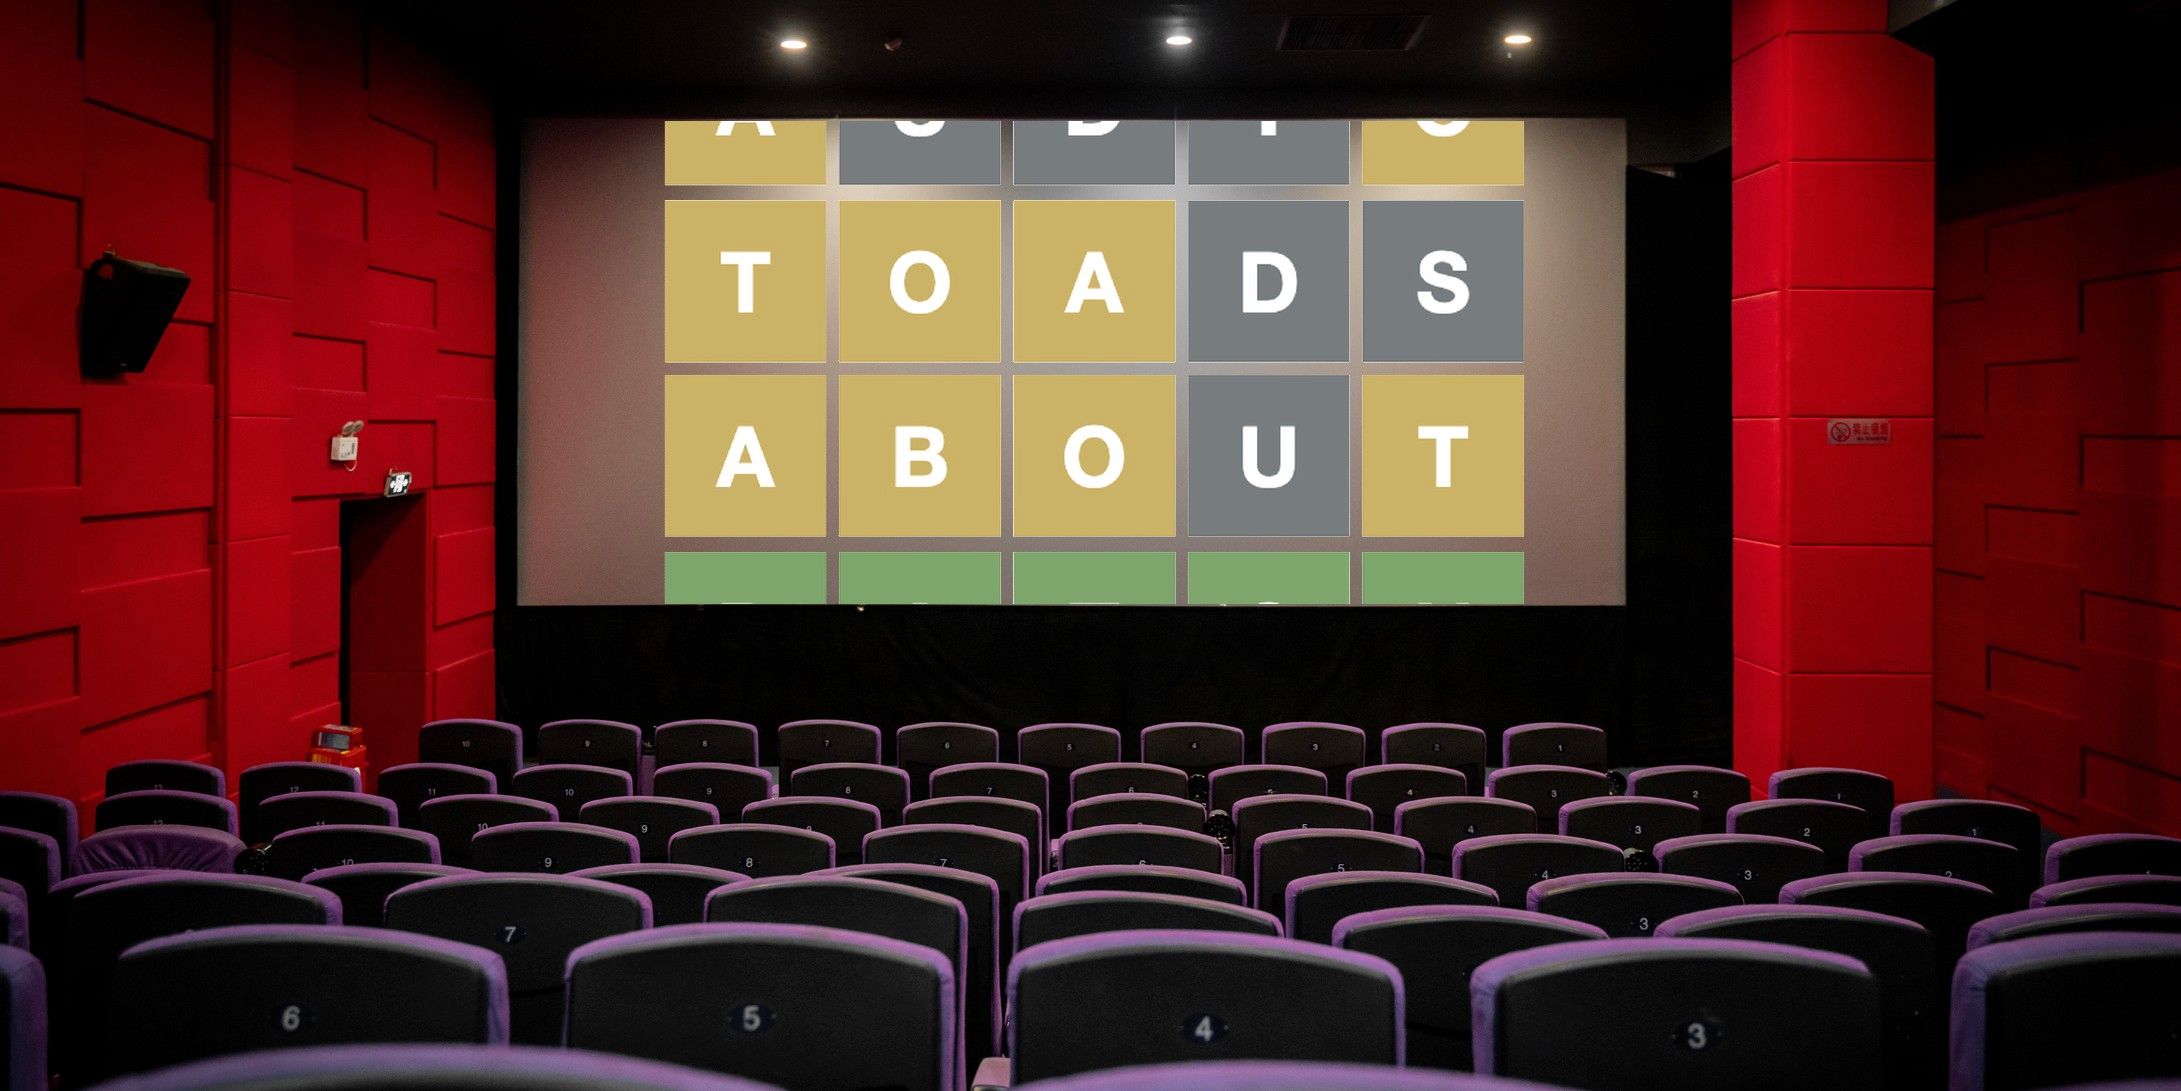 Moviedle es un nuevo juego similar a Wordle para fanáticos del cine